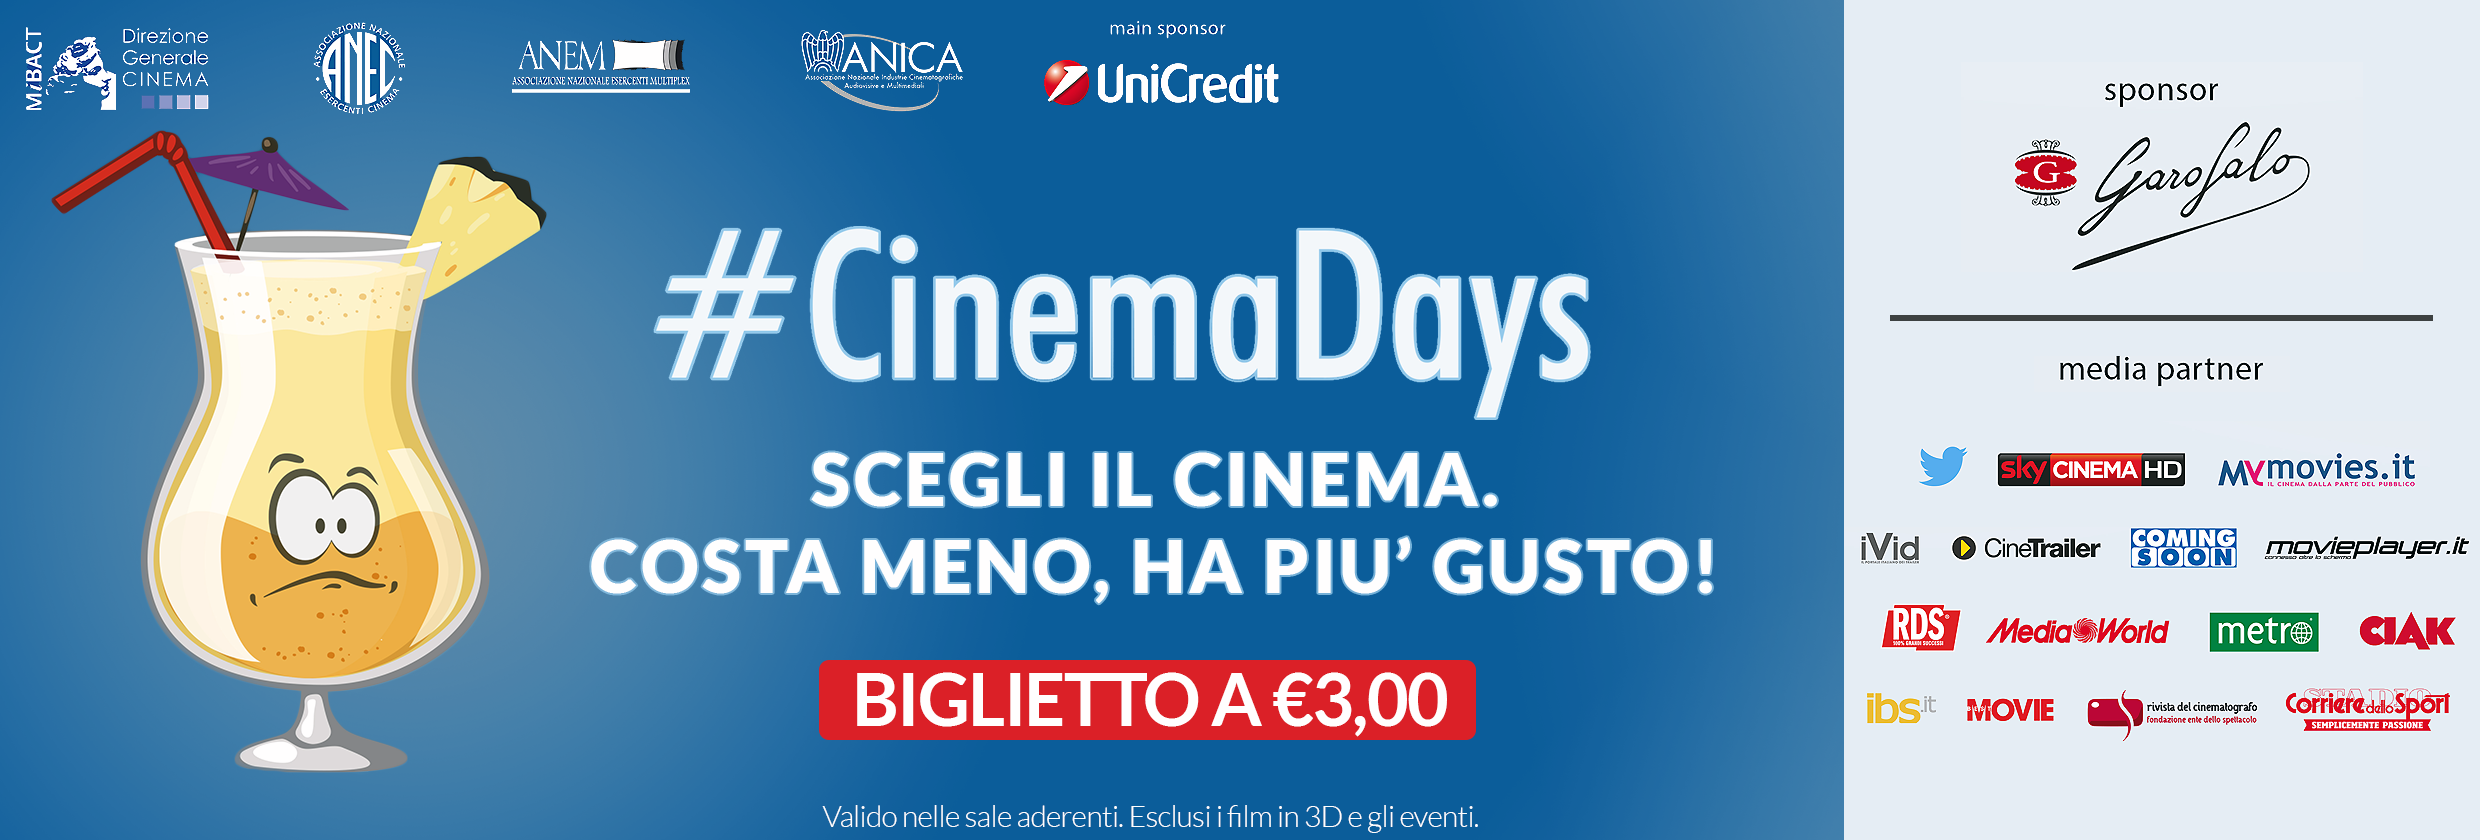 Cinema Days, con soli tre euro si entra in sala